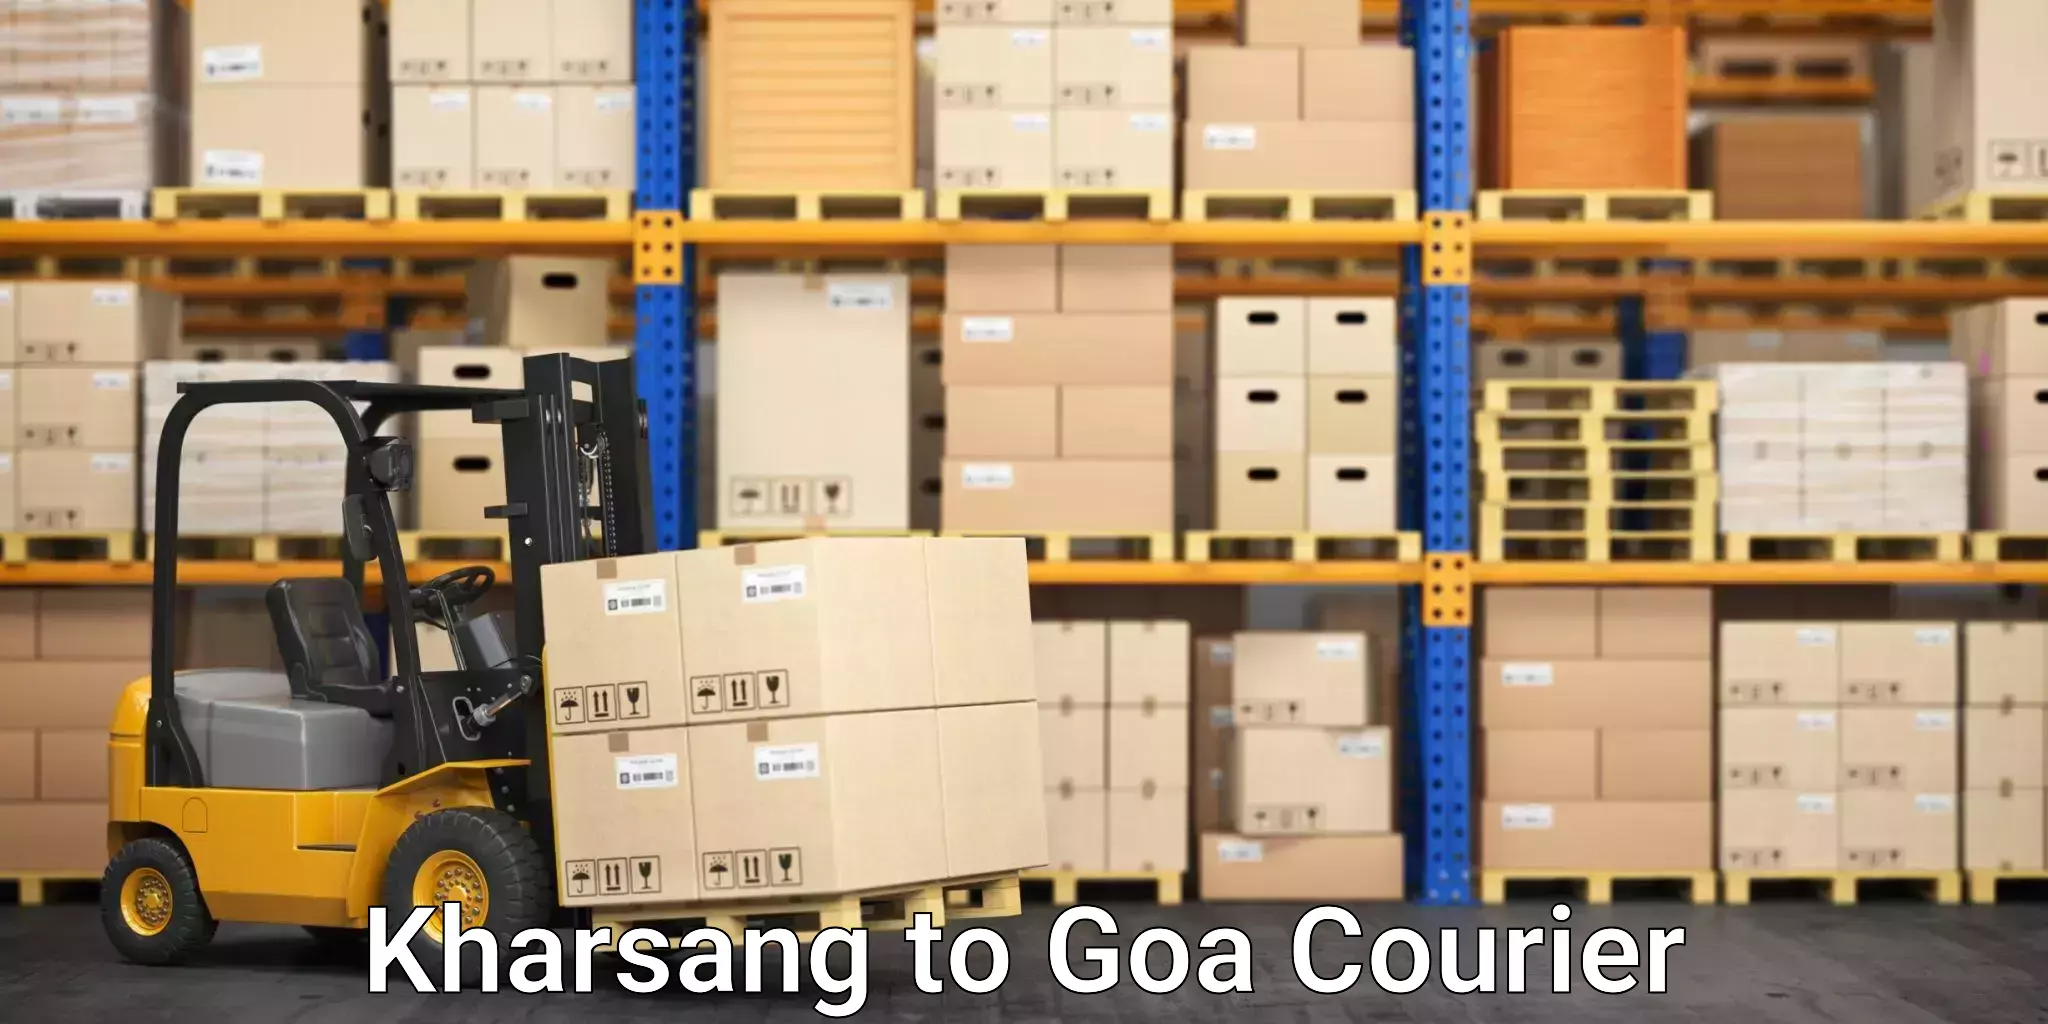 Affordable parcel rates Kharsang to Panaji